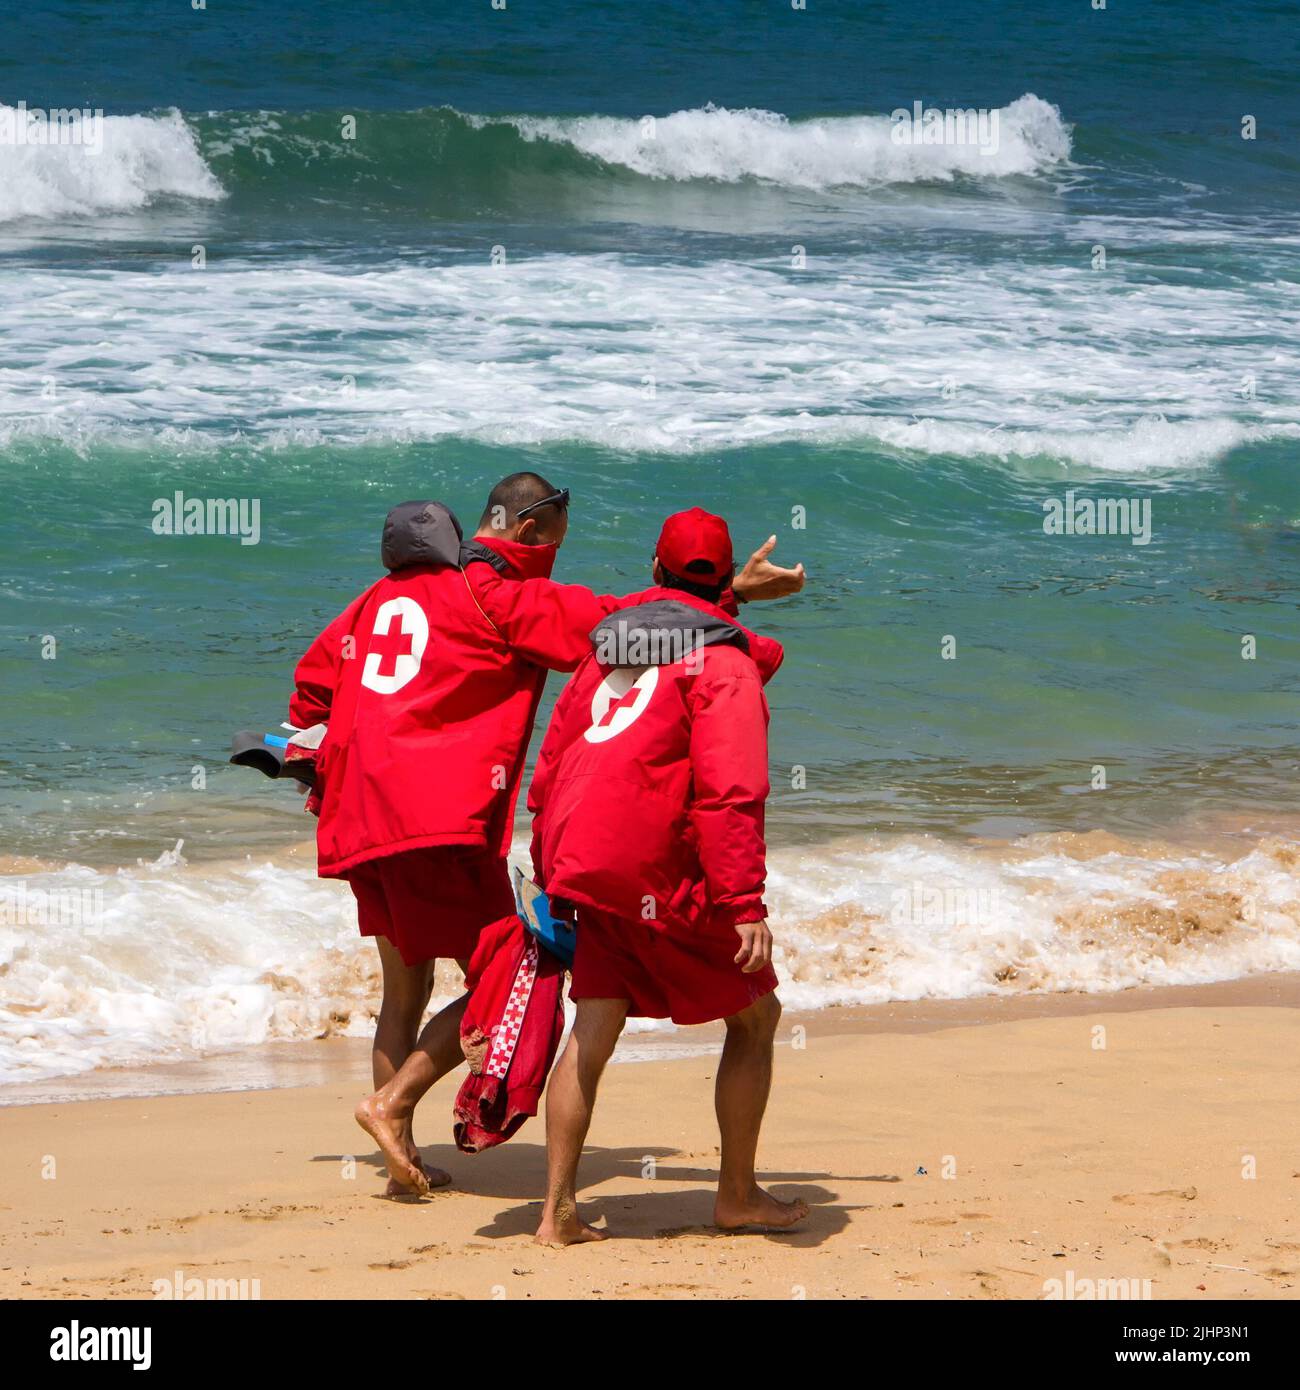 SAN SEBASTIAN, SPAGNA - 03 LUGLIO 2014: Squadra di soccorso con simbolo a croce rossa sulle giacche a piedi sulla spiaggia di San Sebastian (Donostia) Foto Stock